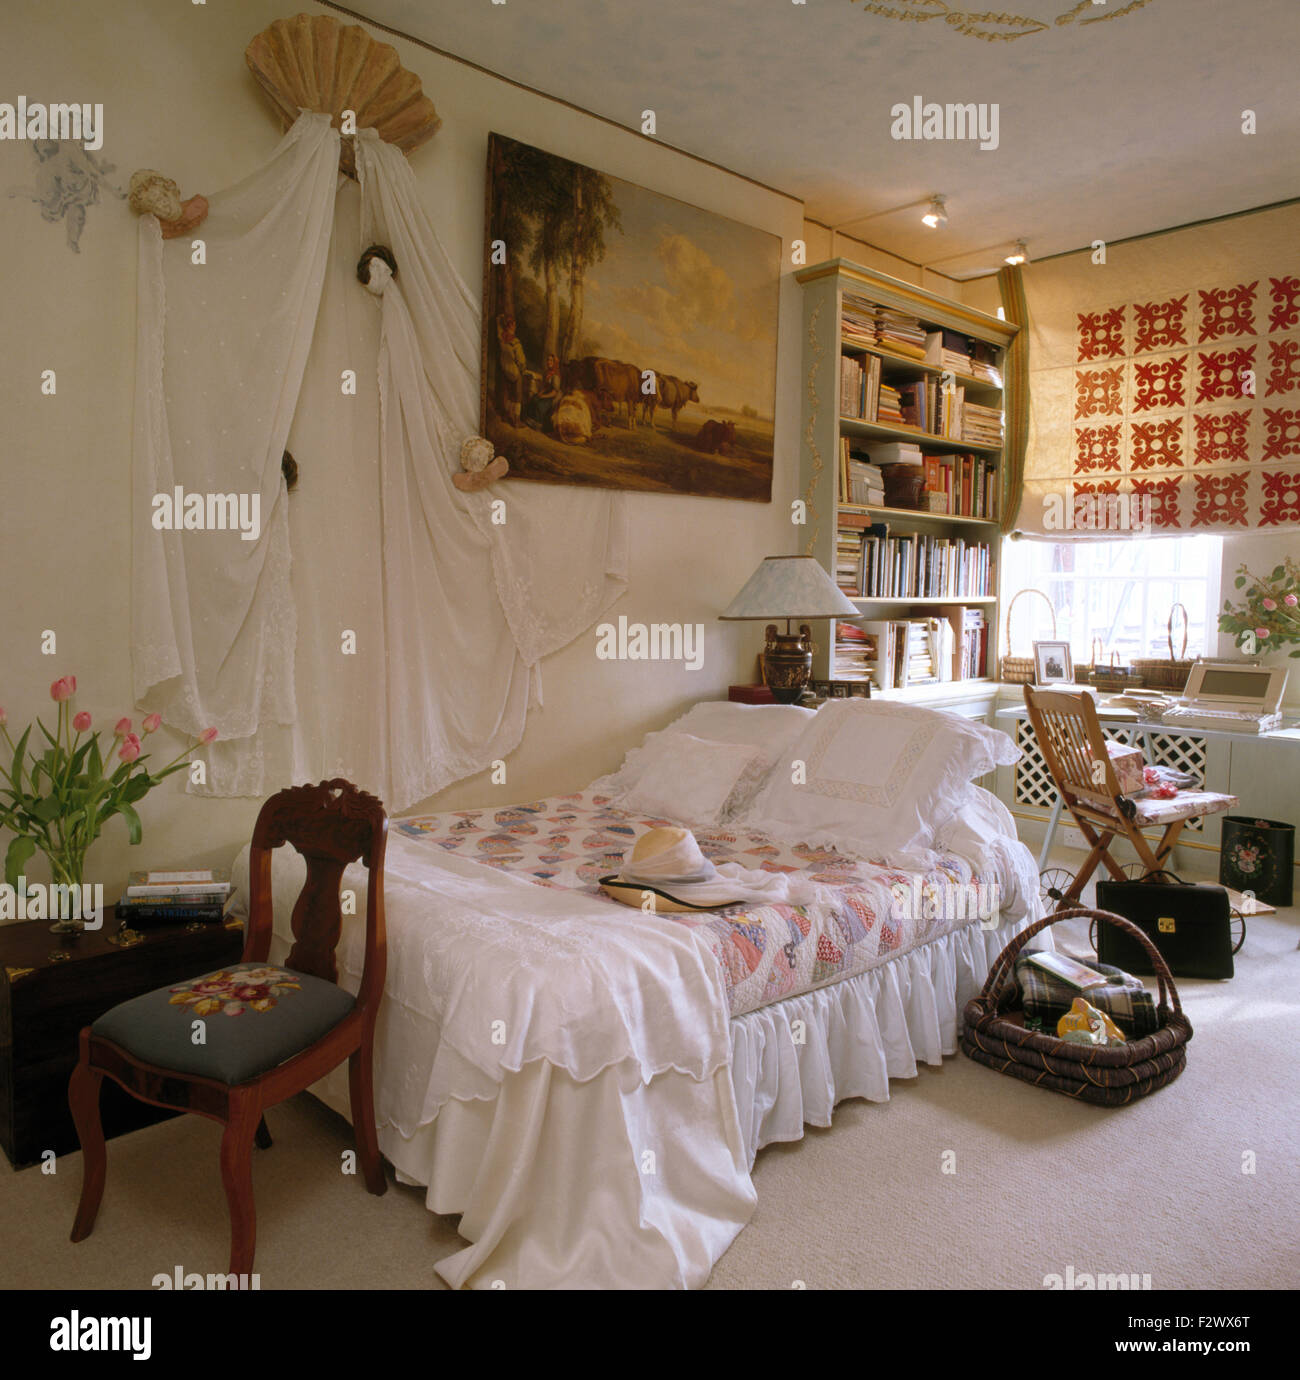 Rideaux blancs sur le mur au-dessus de lit avec draps blancs et une  courtepointe dans une chambre à coucher appartement 80 Photo Stock - Alamy